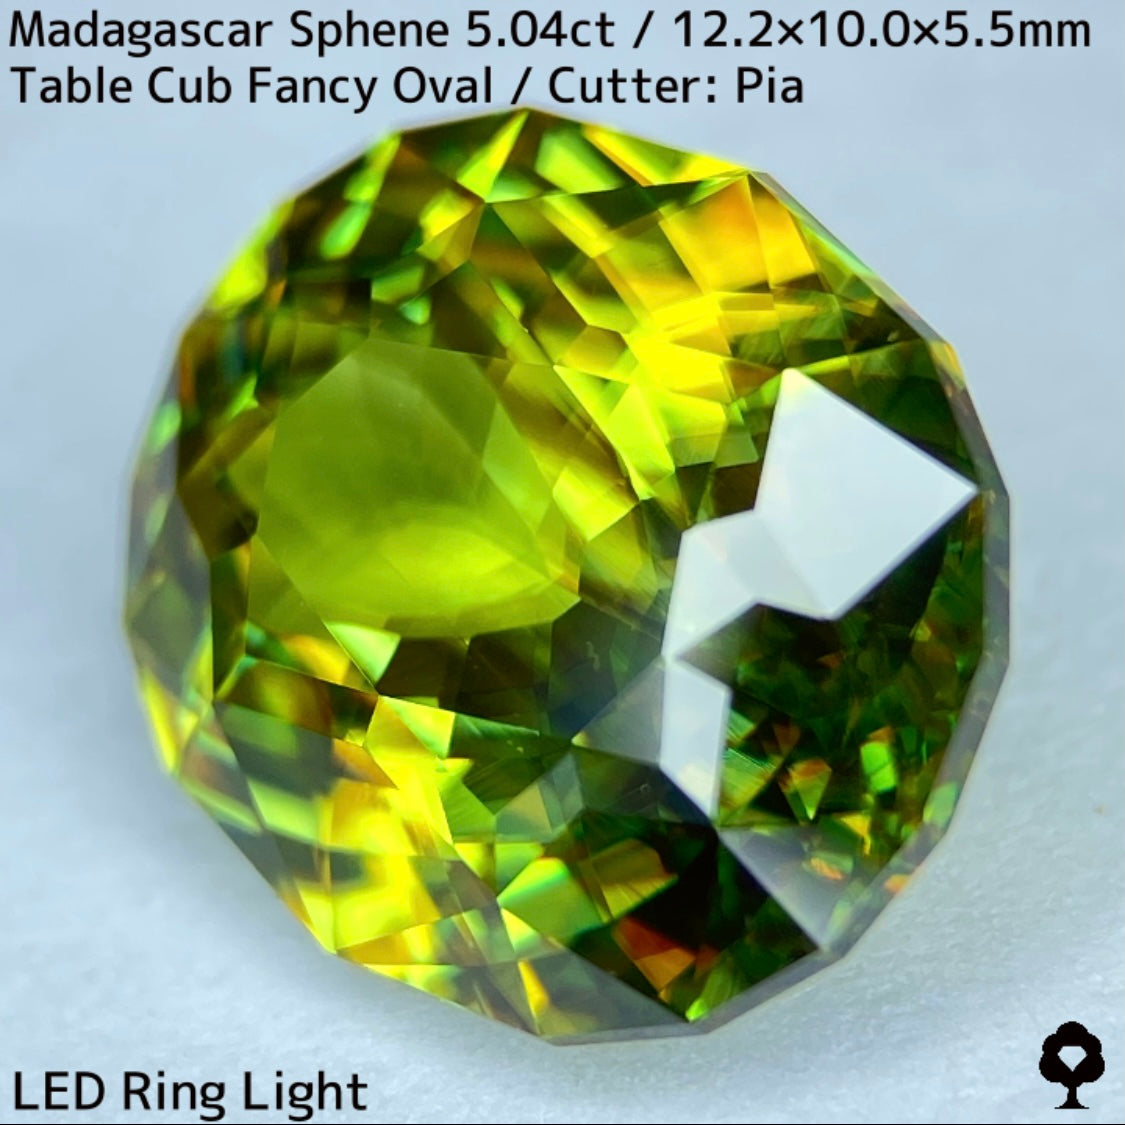 マダガスカル産スフェーン 5.041ct★イエローイッシュグリーンの爽やかで華やかなファイアー溢れる美結晶